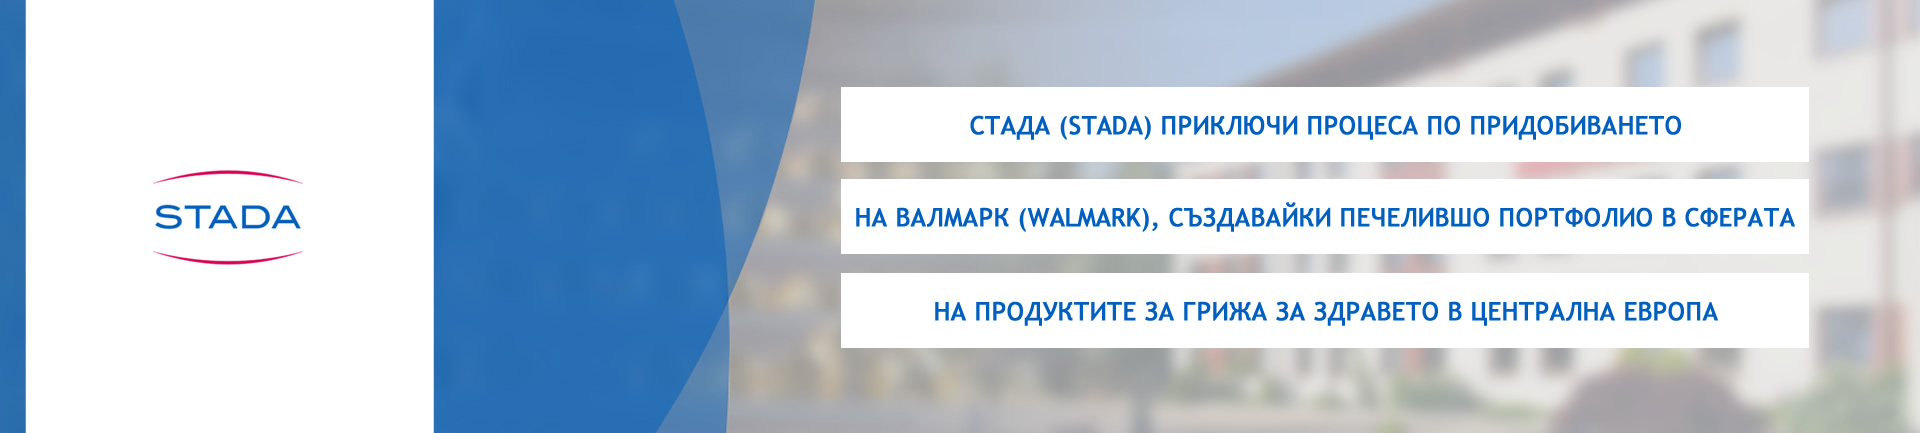 СТАДА (STADA) приключи процеса по придобиването на Валмарк (Walmark), създавайки печелившо портфолио в сферата на продуктите за грижа за здравето в Централна Европа